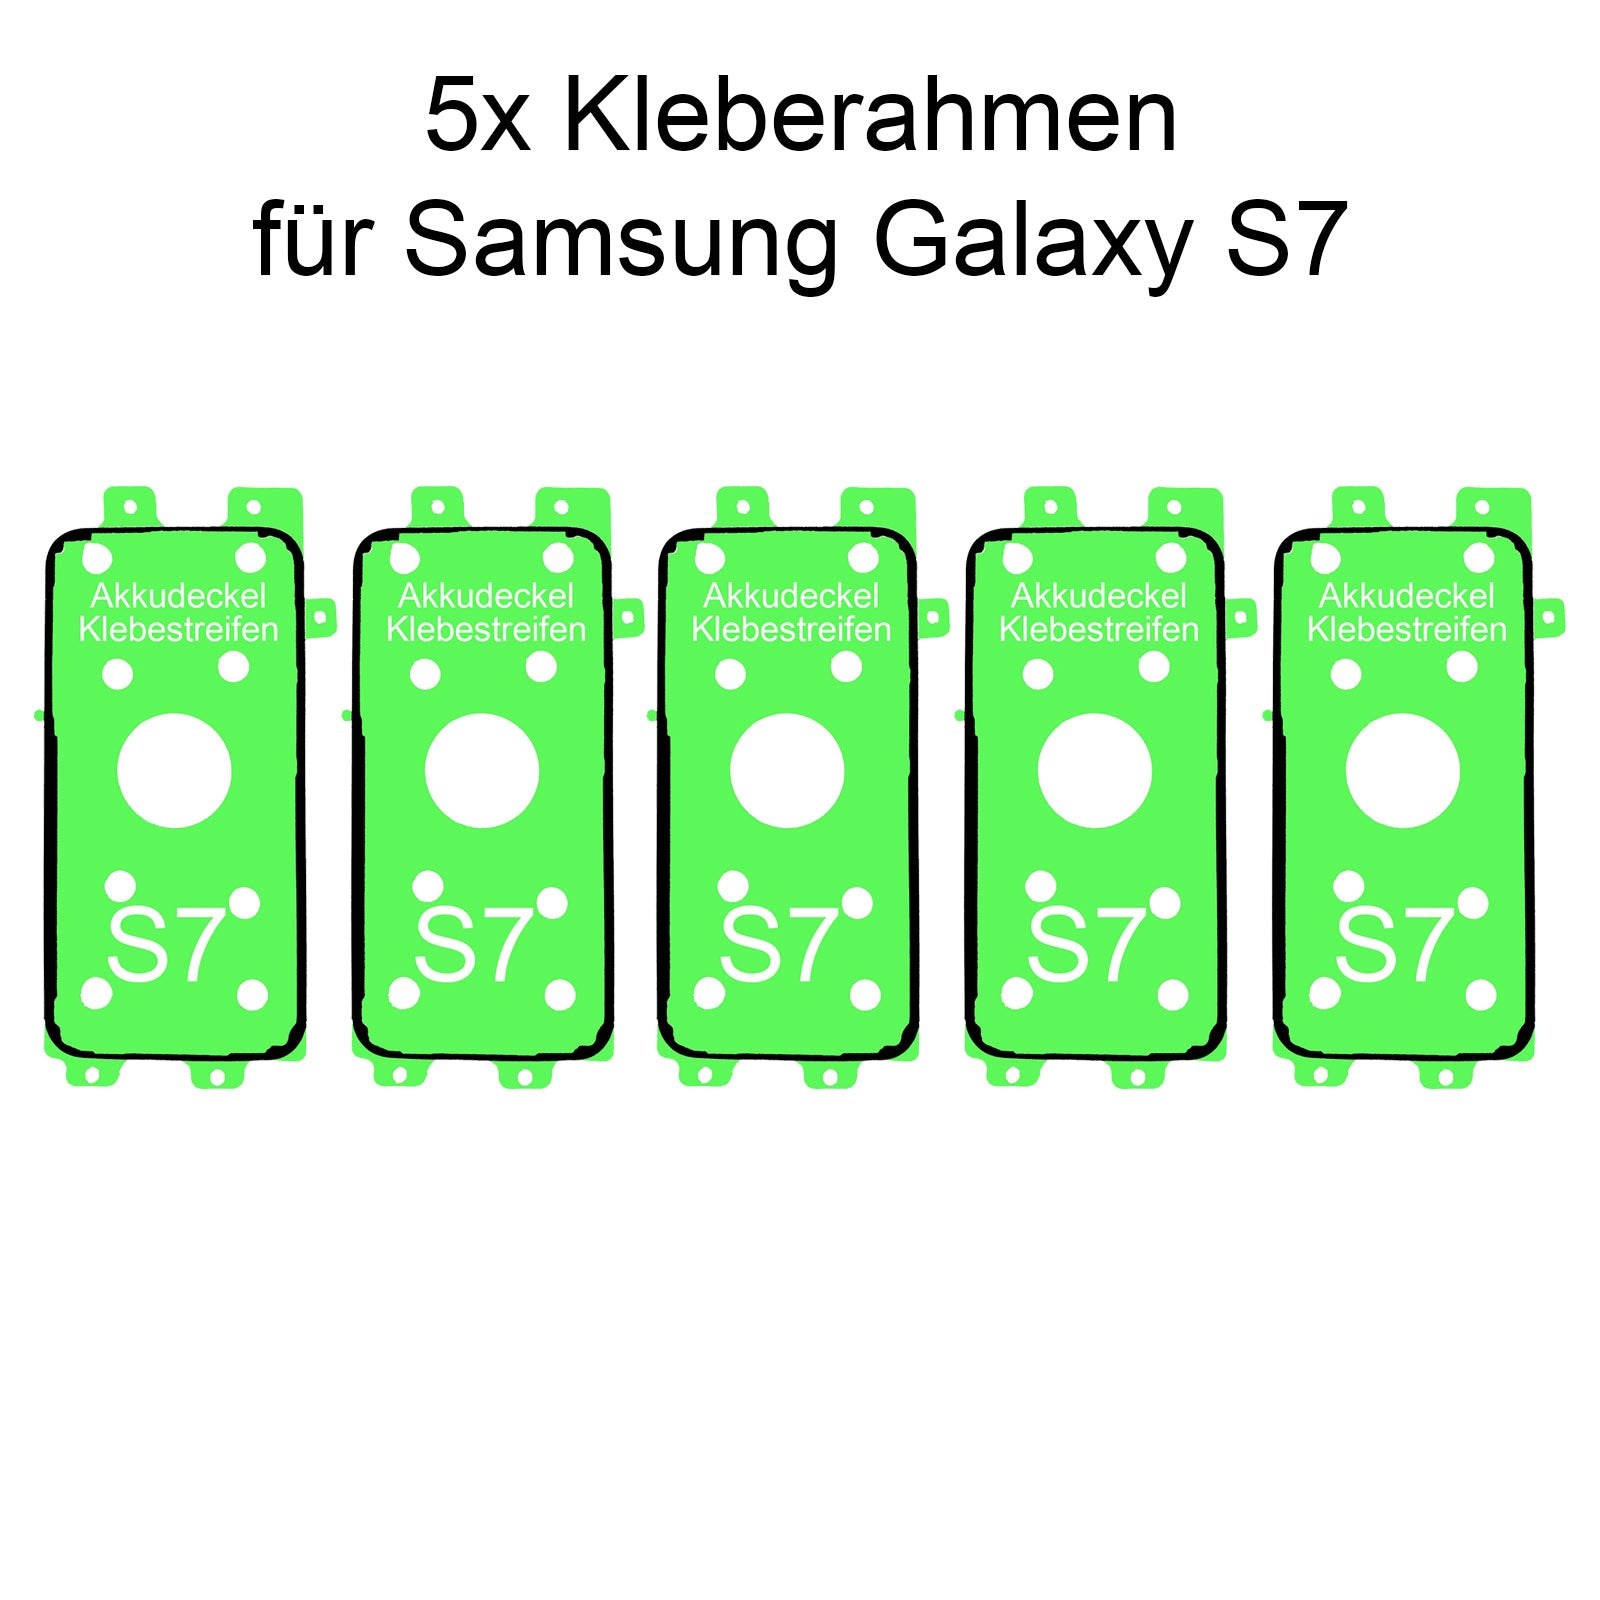 Reparieren Sie Ihren Samsung Galaxy S7 Rahmen schnell und einfach mit unserem hochwertigen Klebepad, jetzt bei Dinngs.de entdecken und bestellen!